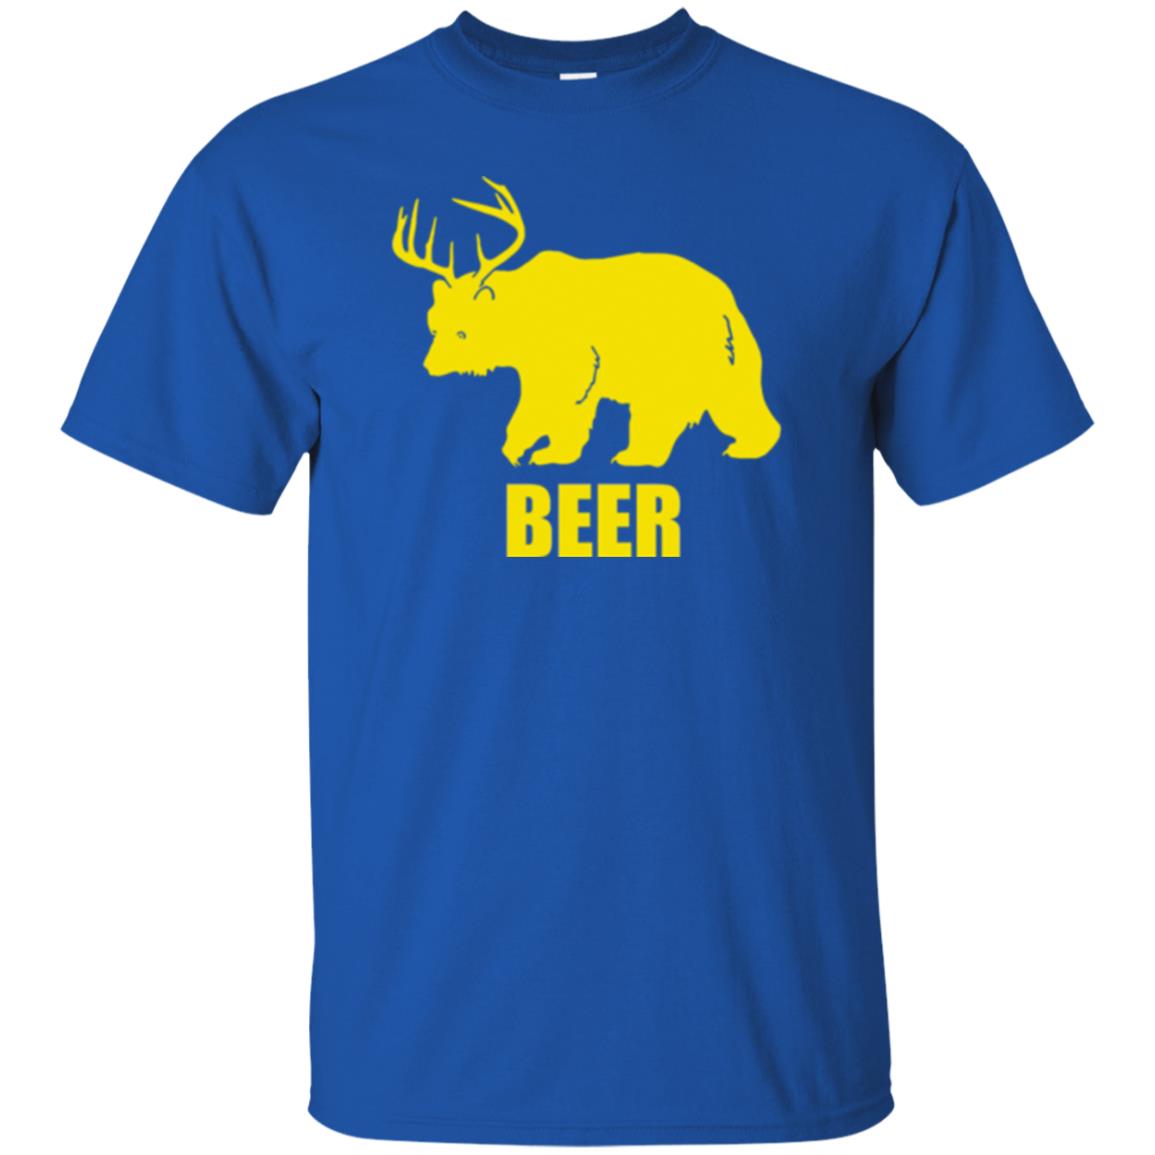 Beer Bear Deer Shirt - 10% Off - FavorMerch